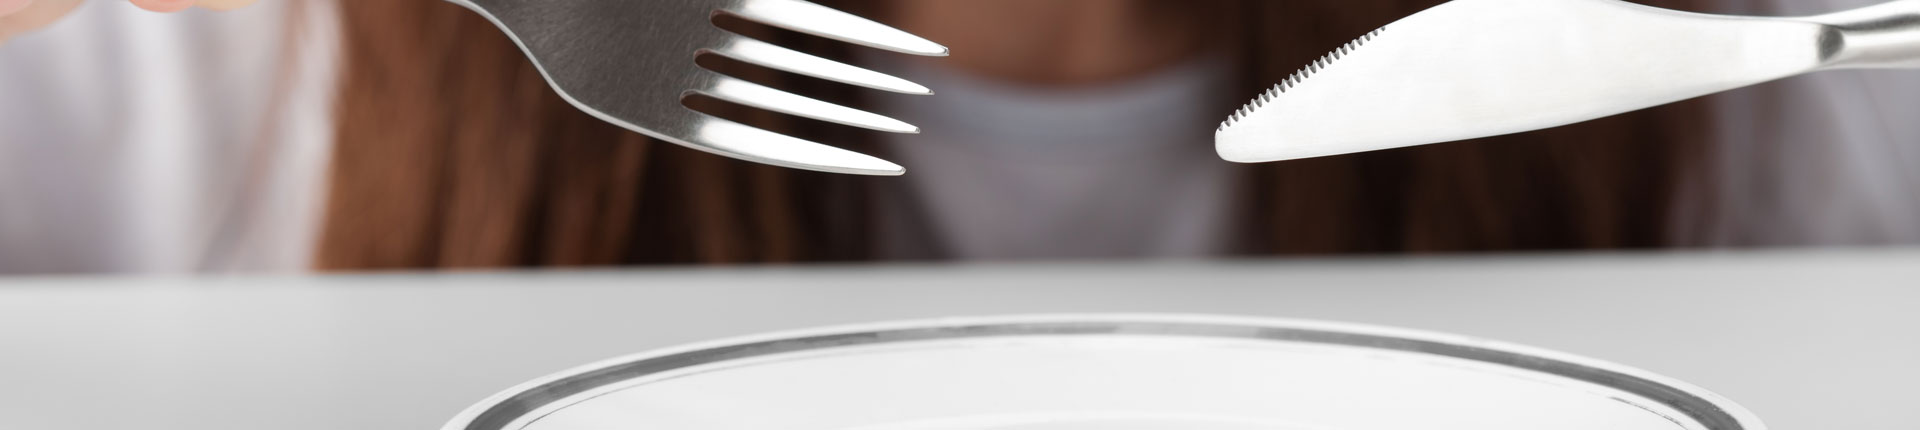 Intermittent Fasting - zasady i przykładowy jadłospis